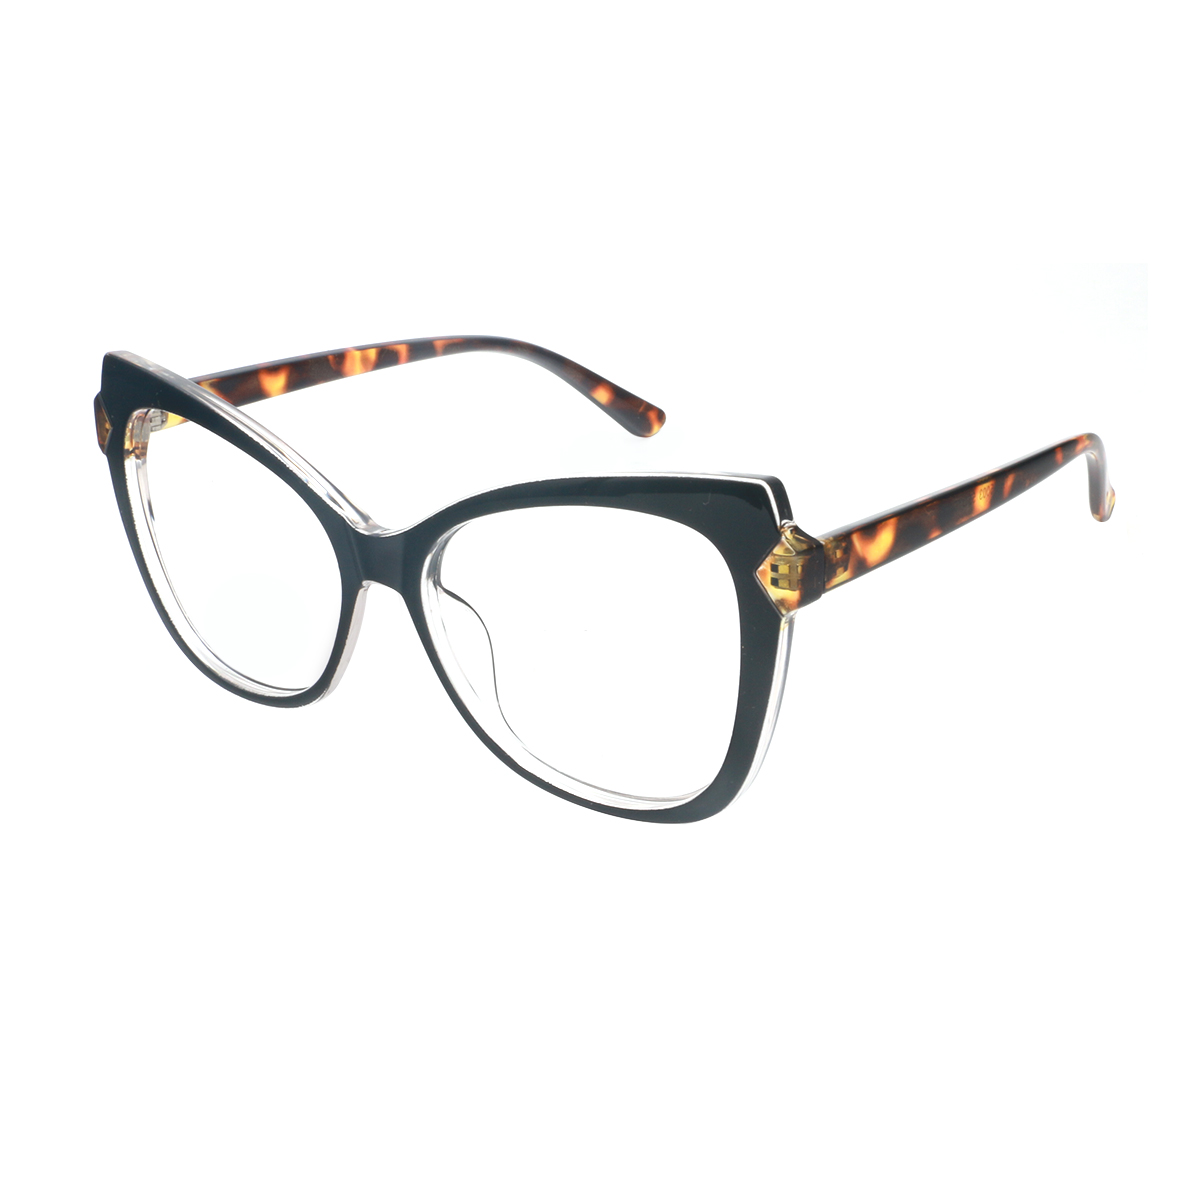 Alazir - Cat-eye Black Reading Glasses for Women